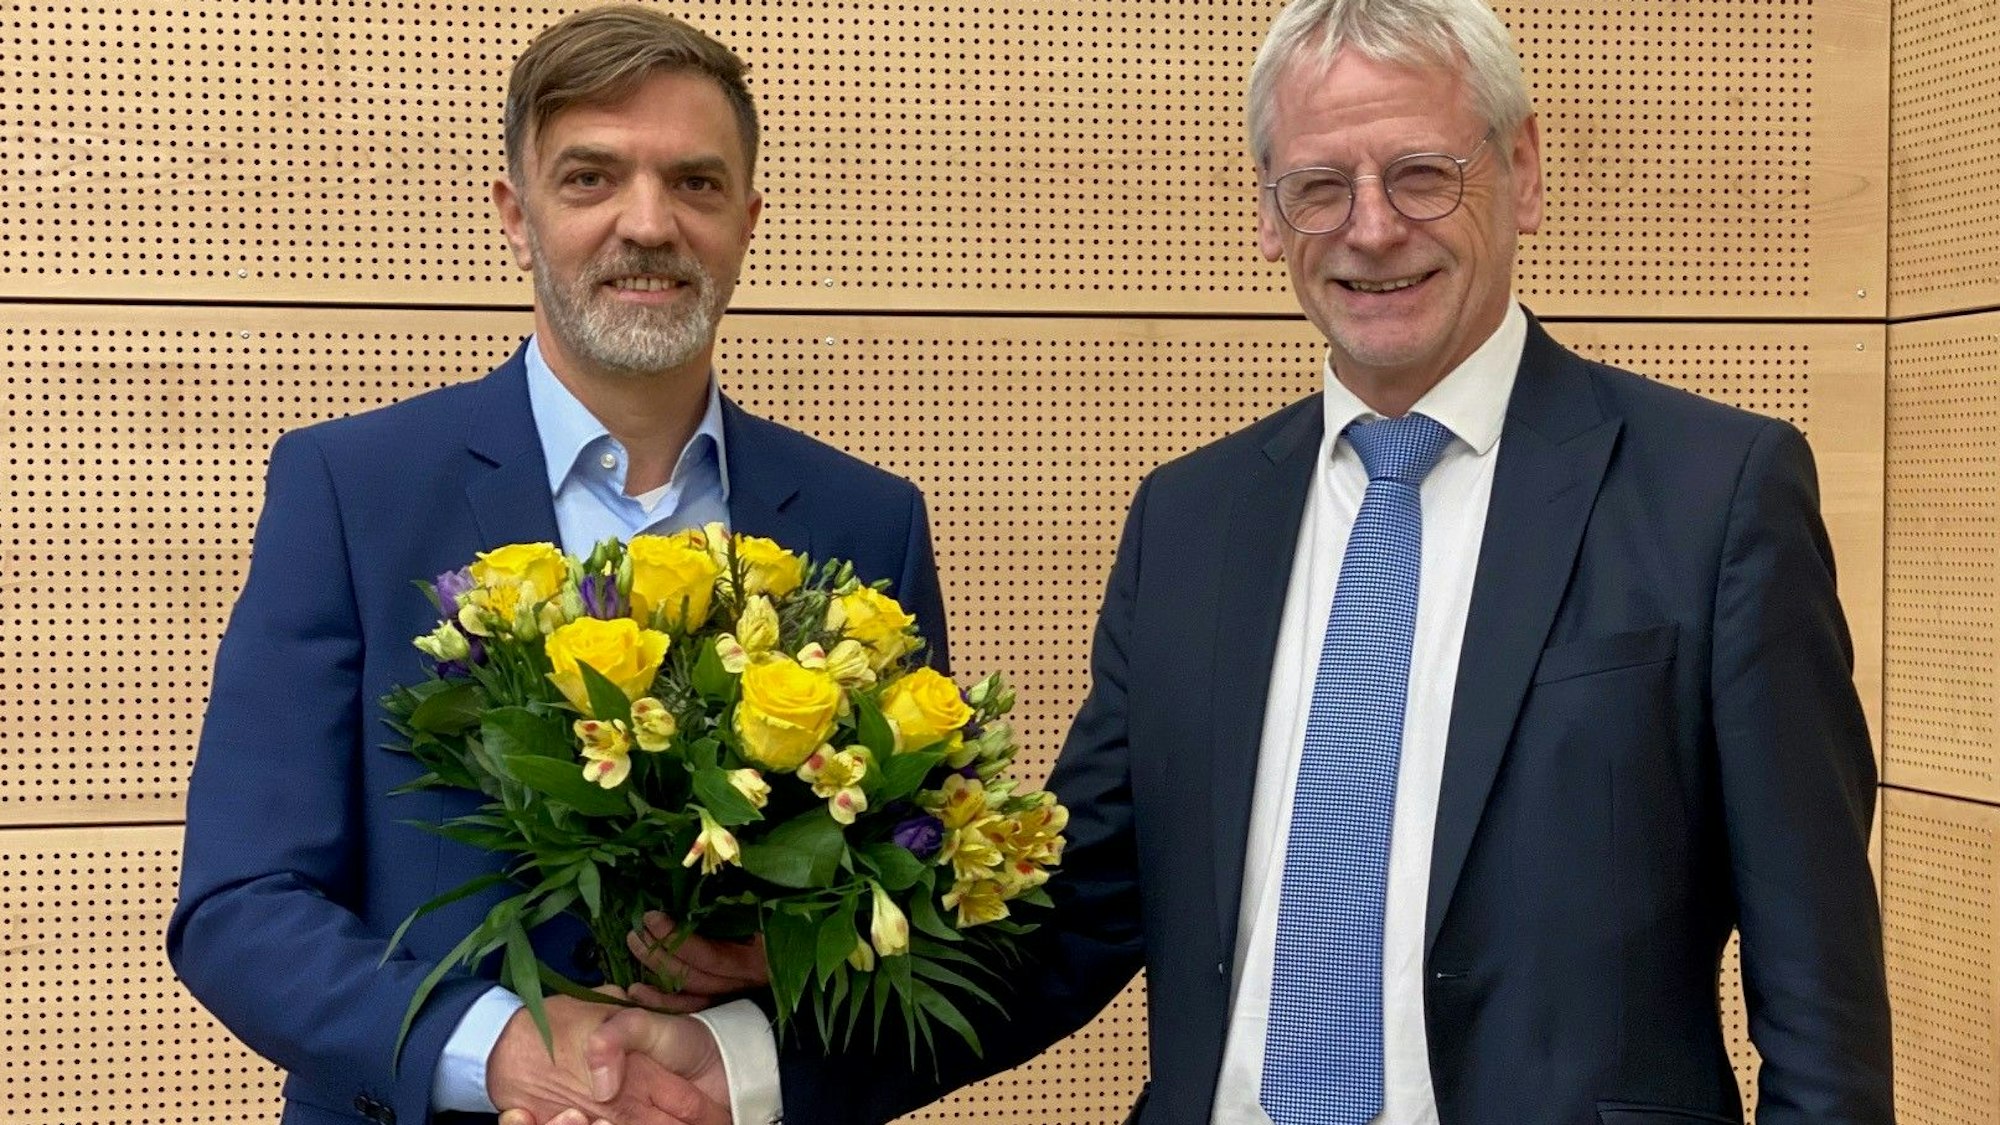 Das Bild zeigt Gerno Böll, frischgewählter Dezernent, wie er von Bürgermeister Dieter Freytag einen Blumenstrauß erhält.